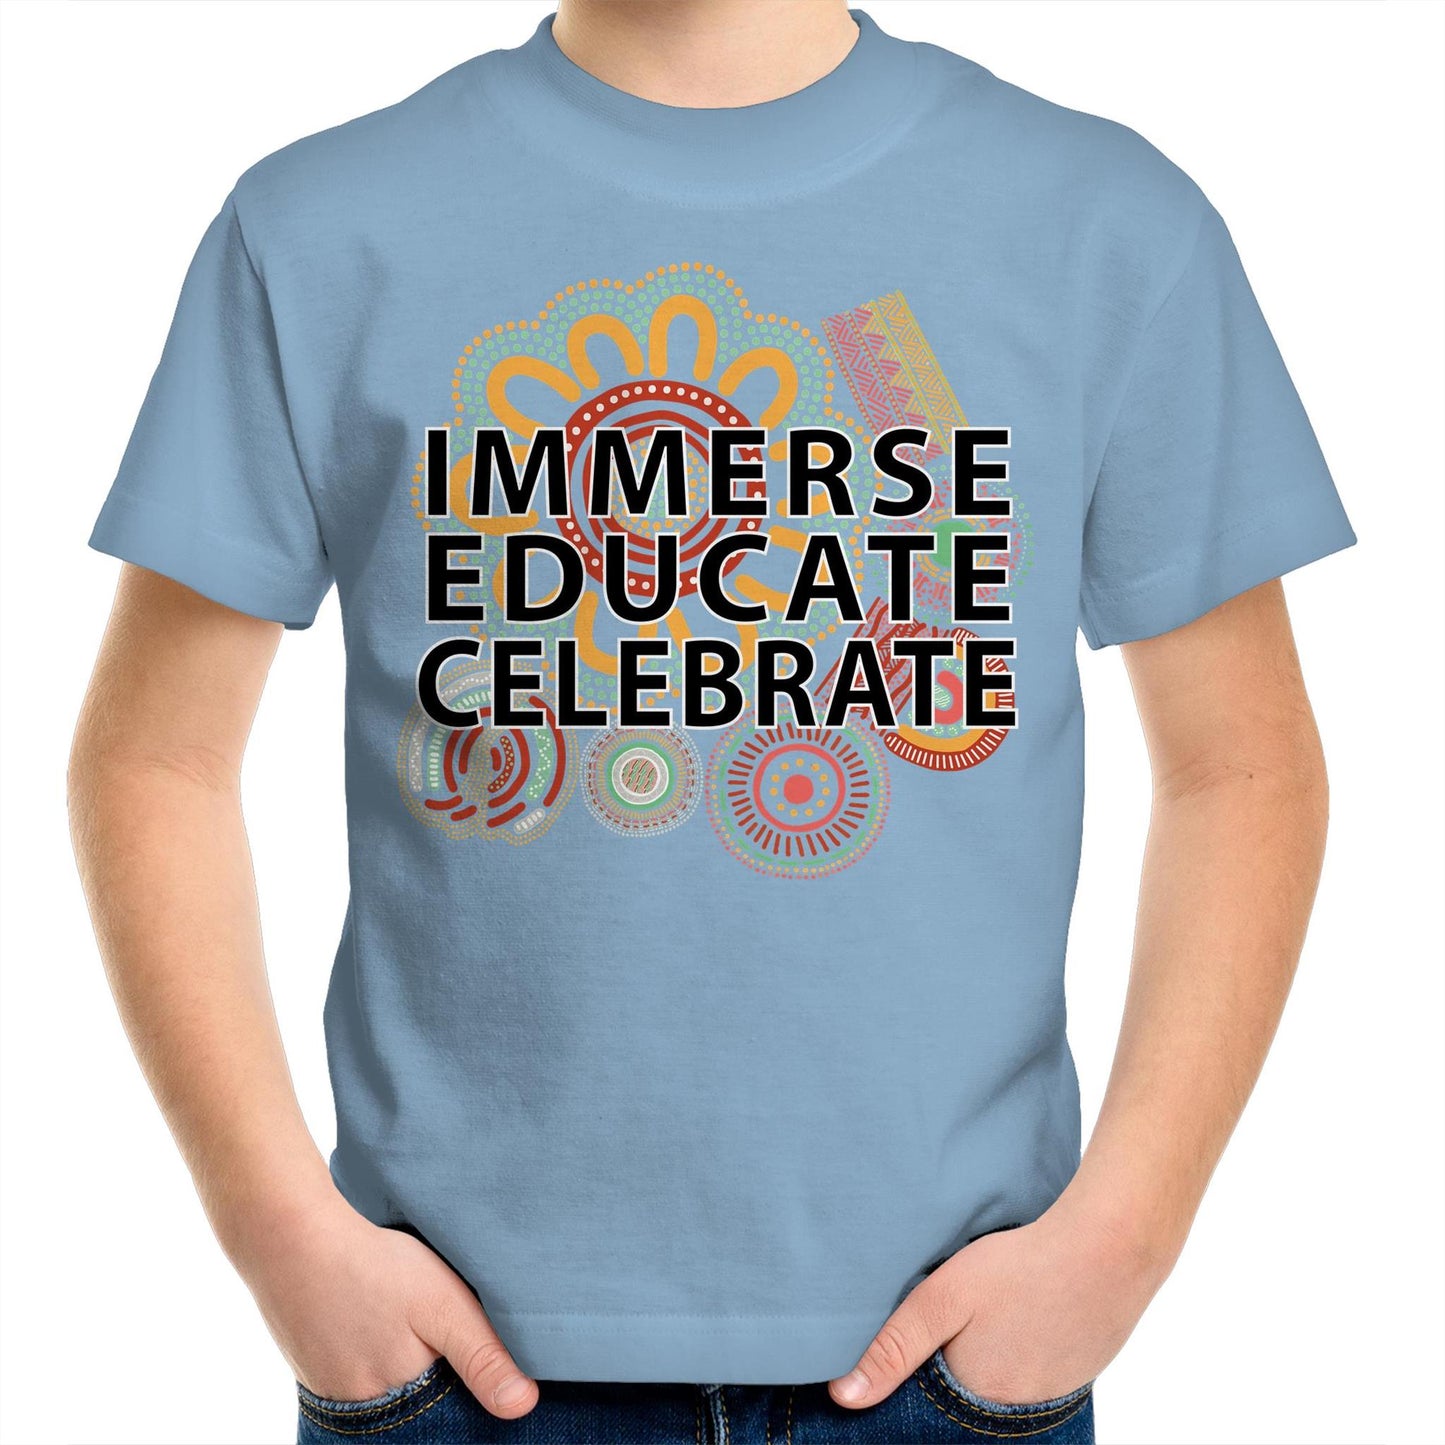 'Immerse, Educate, Celebrate' Aboriginal Design Kids T-Shirt